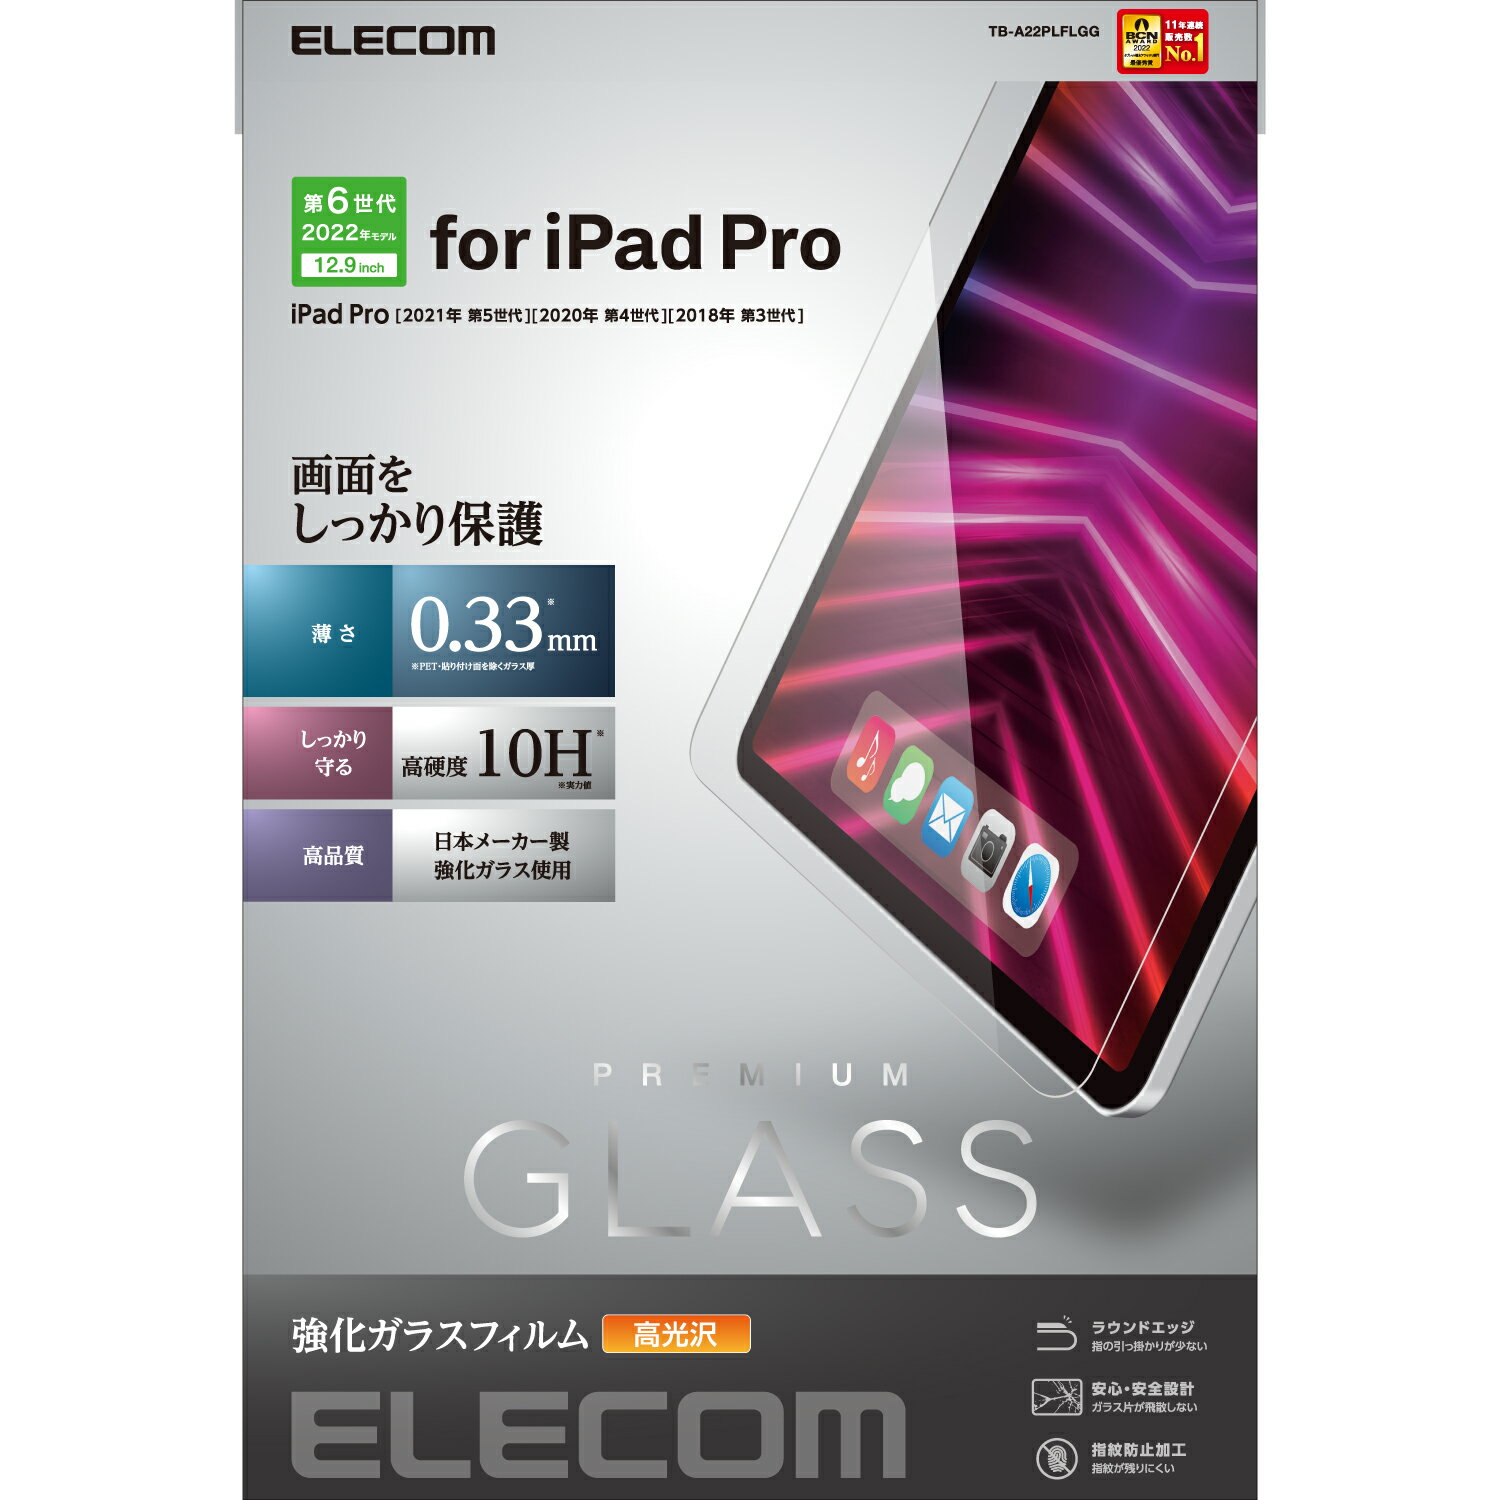 ELECOM（エレコム） iPad Pro 12.9インチ 第 6 /5 / 4 / 3 世代 用 ガラスフィルム 高透明 強化ガラス 表面硬度10H 指紋防止 飛散防止 エアーレス TB-A22PLFLGG